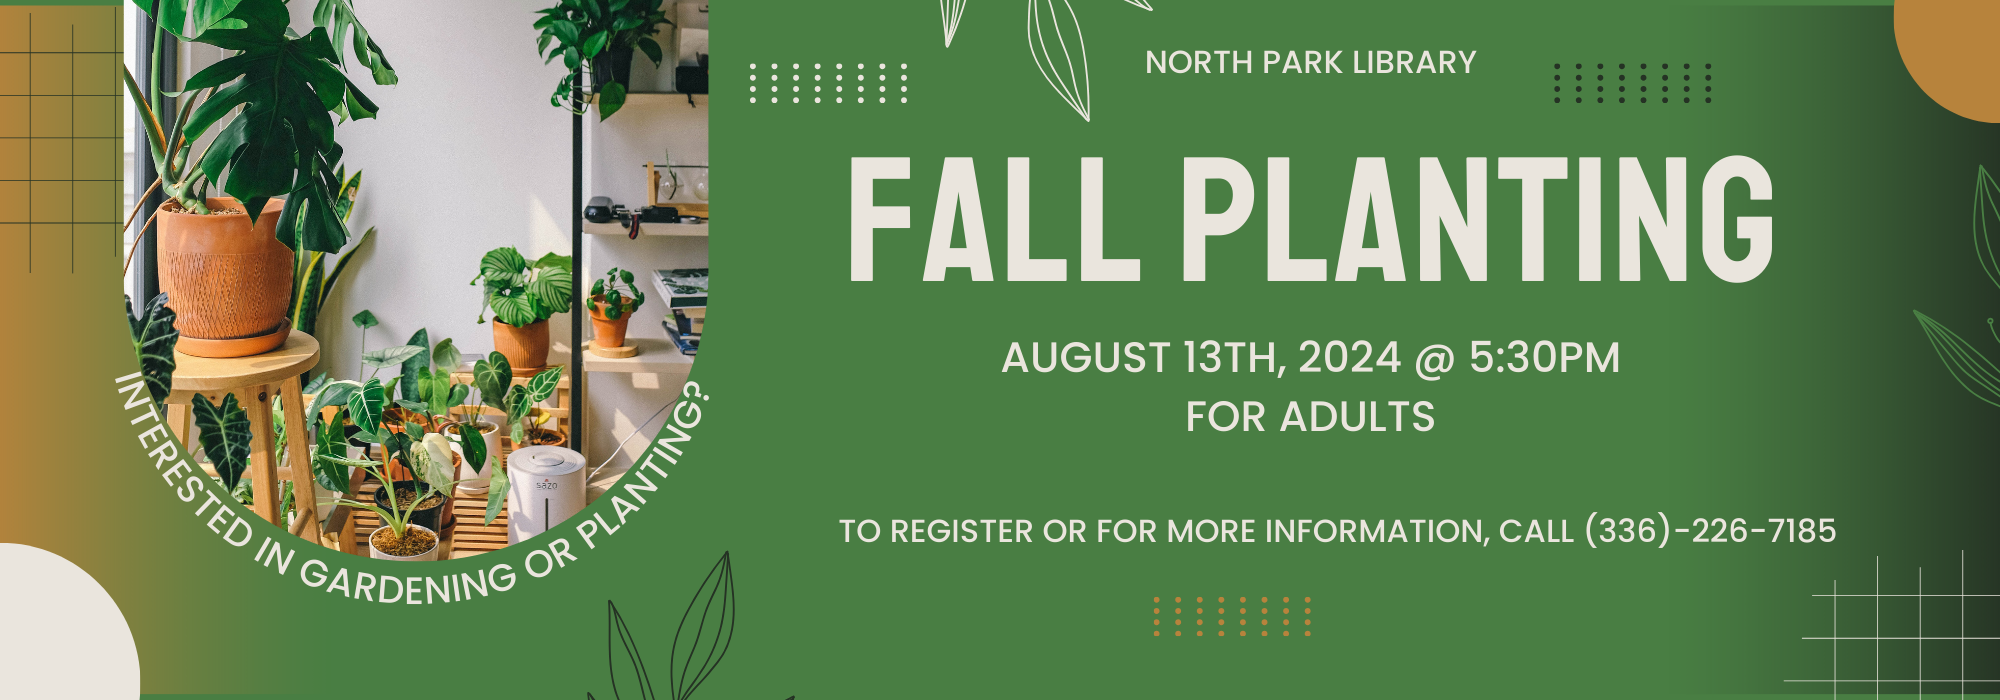 8.13 at 530 pm - Fall Planting at North Park